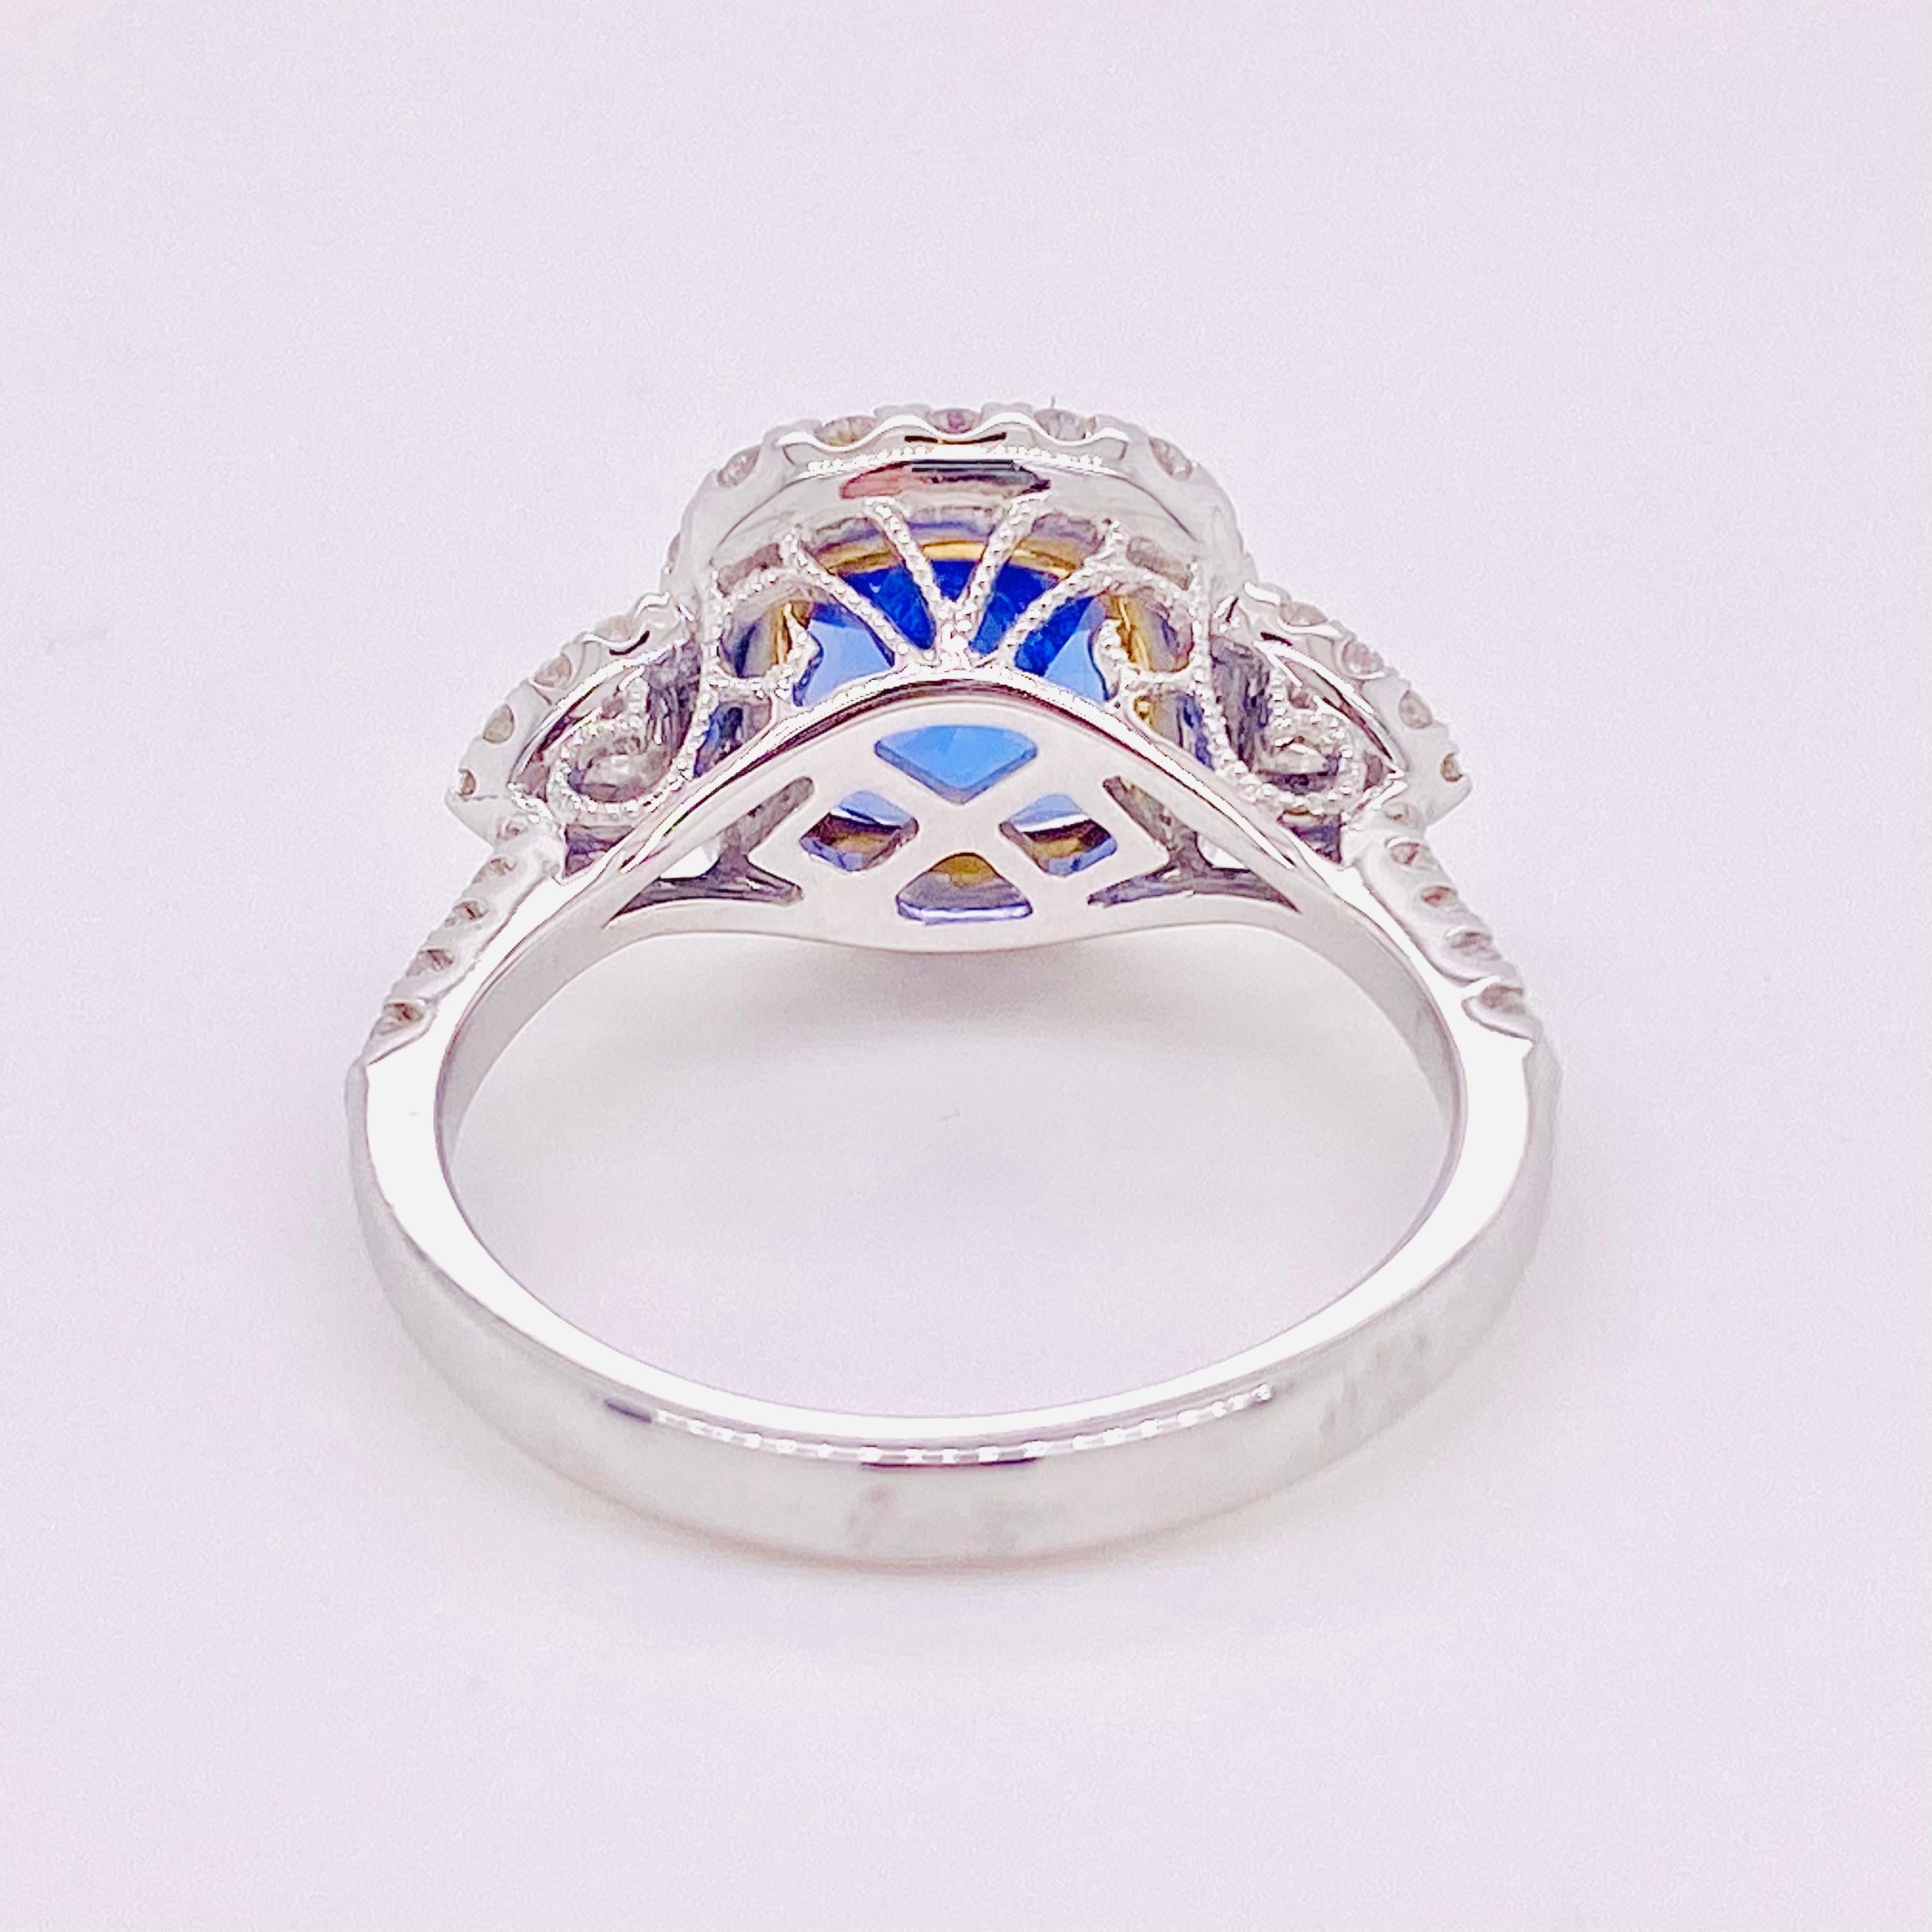 For Sale:  1.5 Carat Tanzanite Halo Ring, .50 Carat Diamond and Tanzanite Halo Ring 4